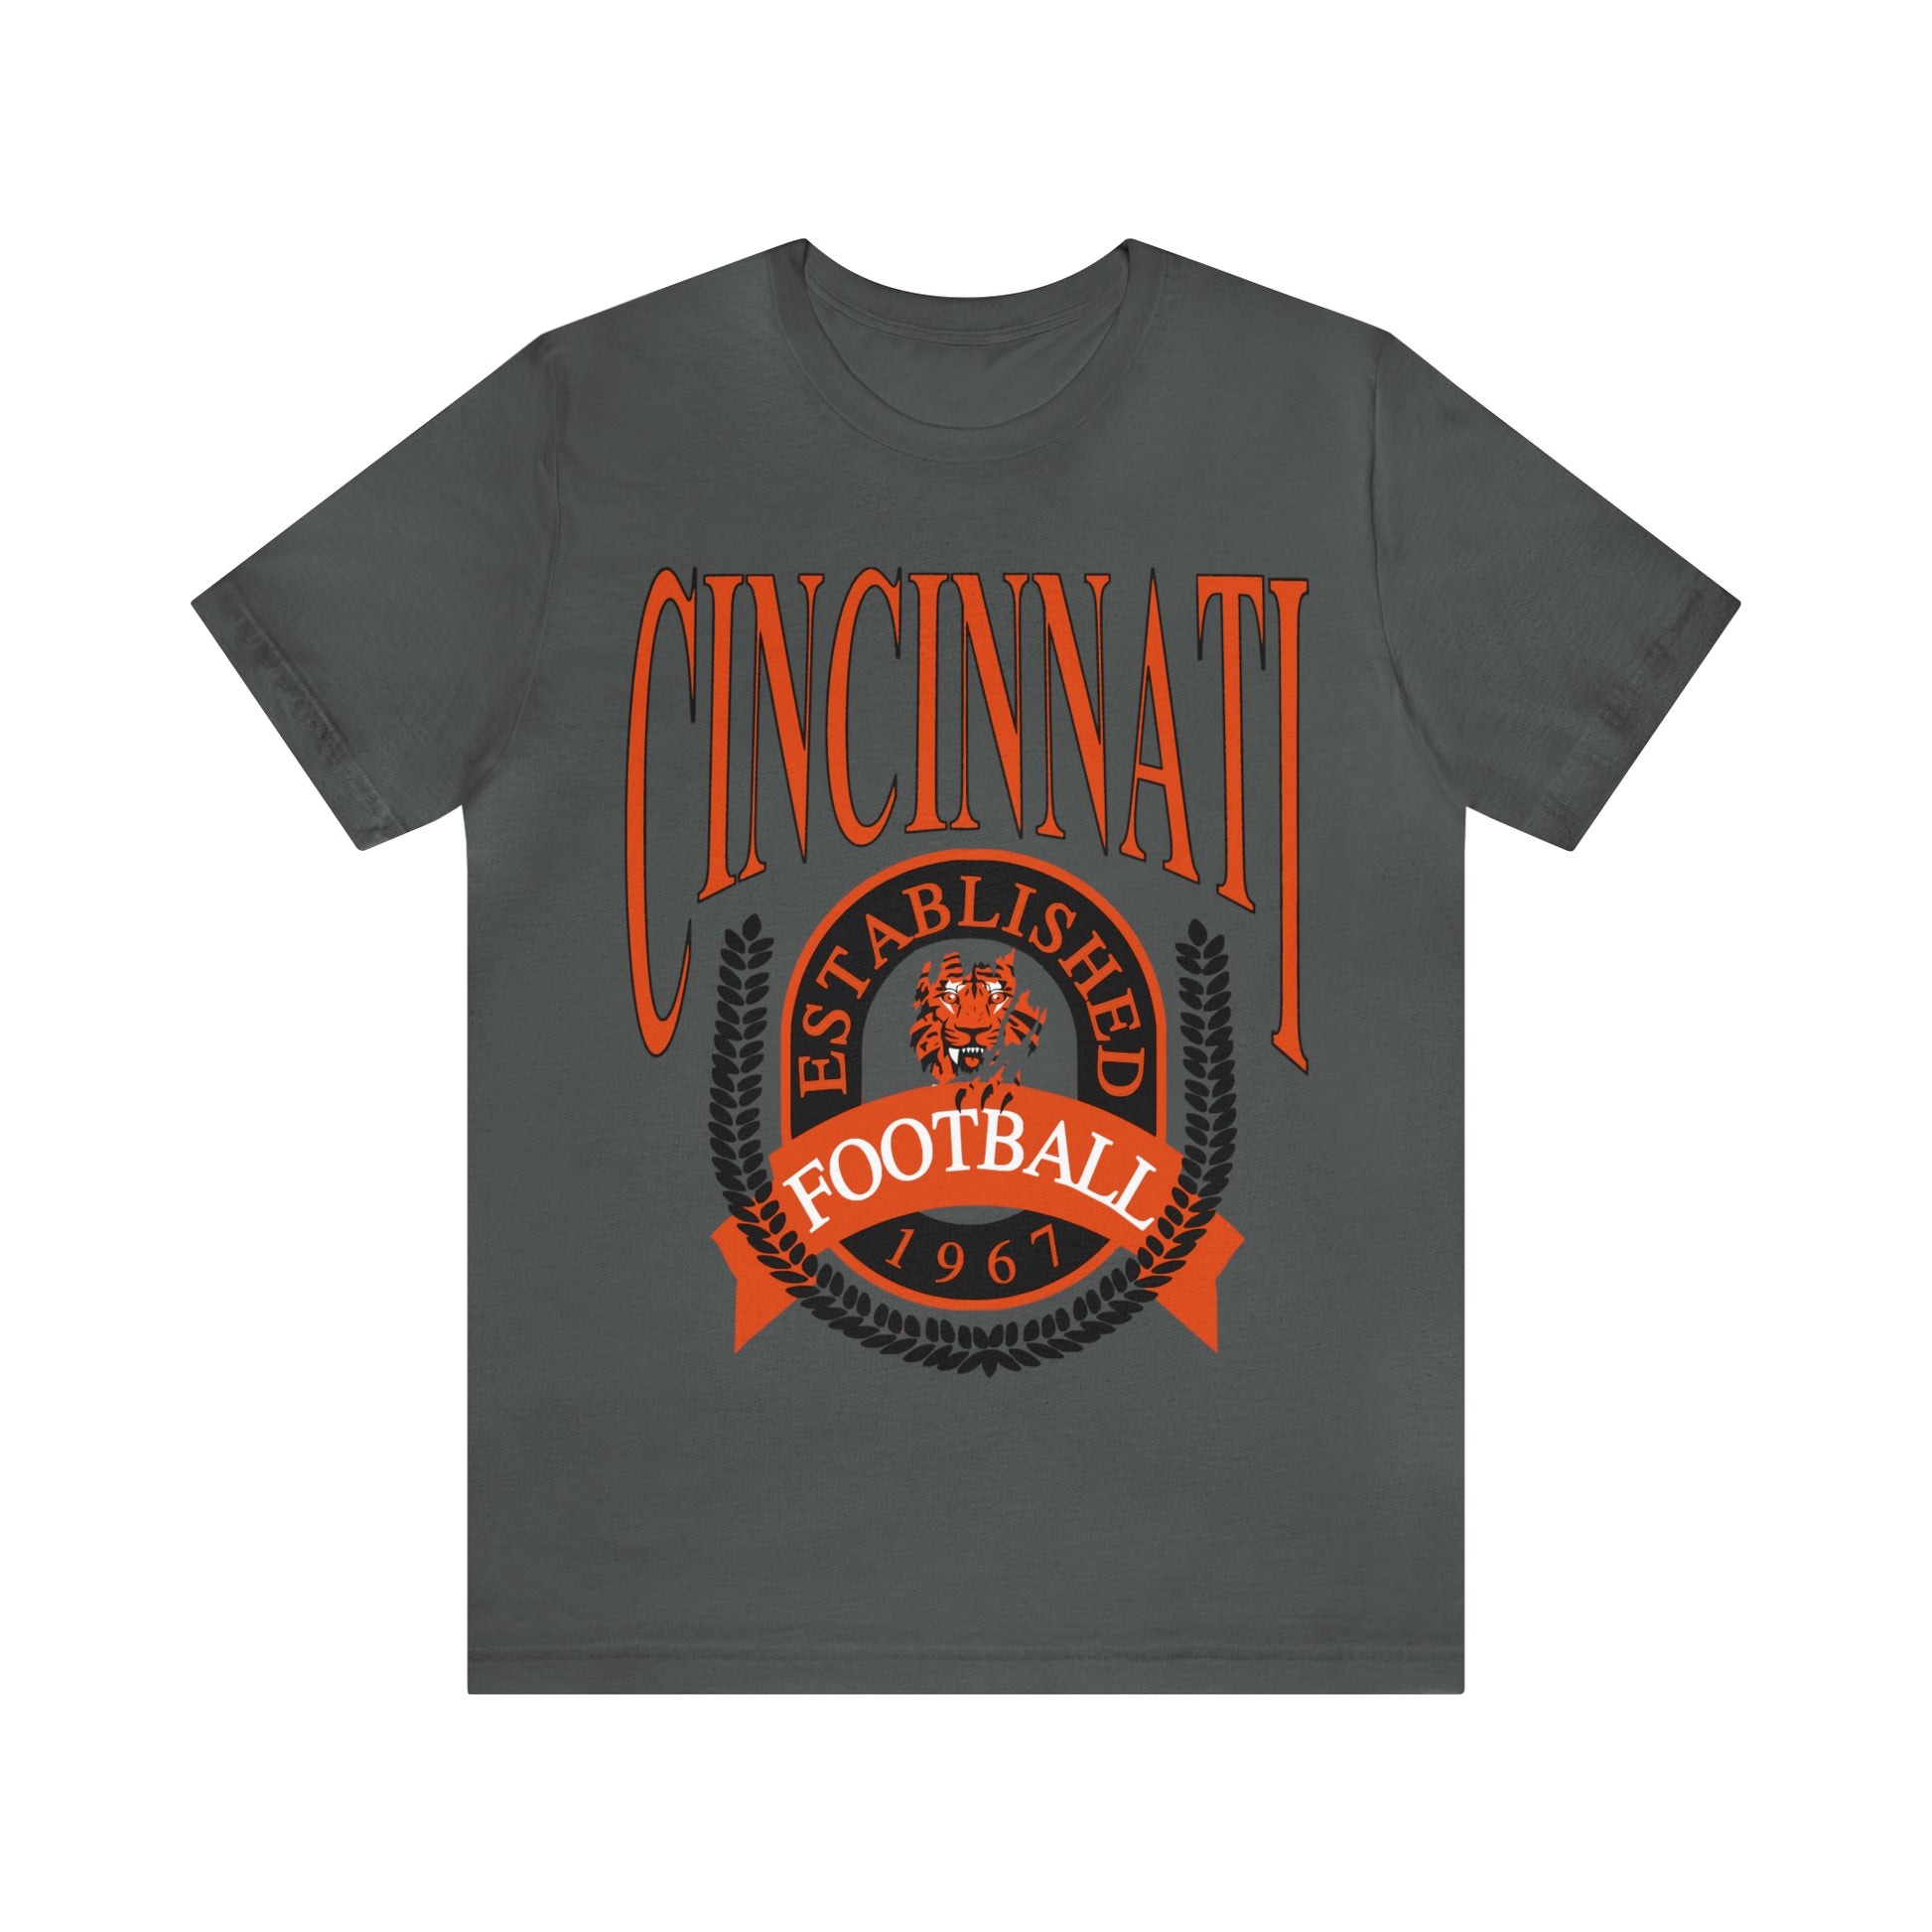 Cincinnati Bengals T-Shirt - Vintage Short Sleeve Bengals Tee - NFL Football Oversized Unisex, Men's & Women's Apparel - Design 1 gray